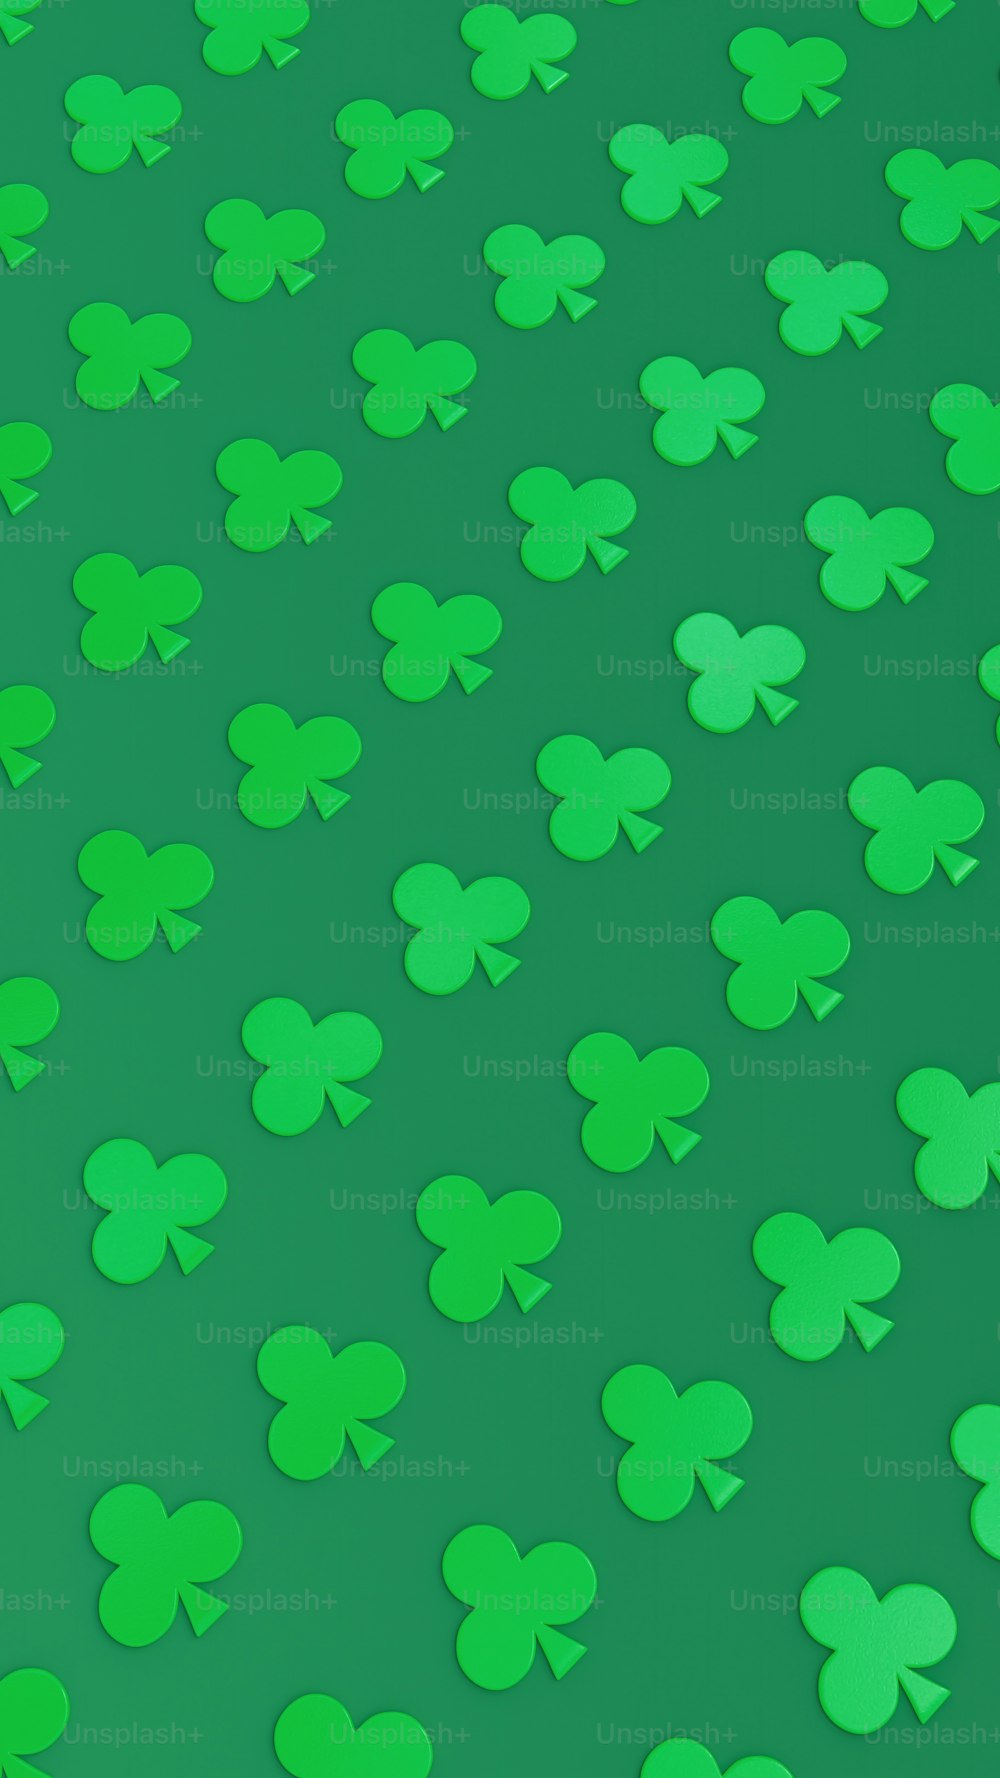 Un sacco di trifogli verdi su uno sfondo verde